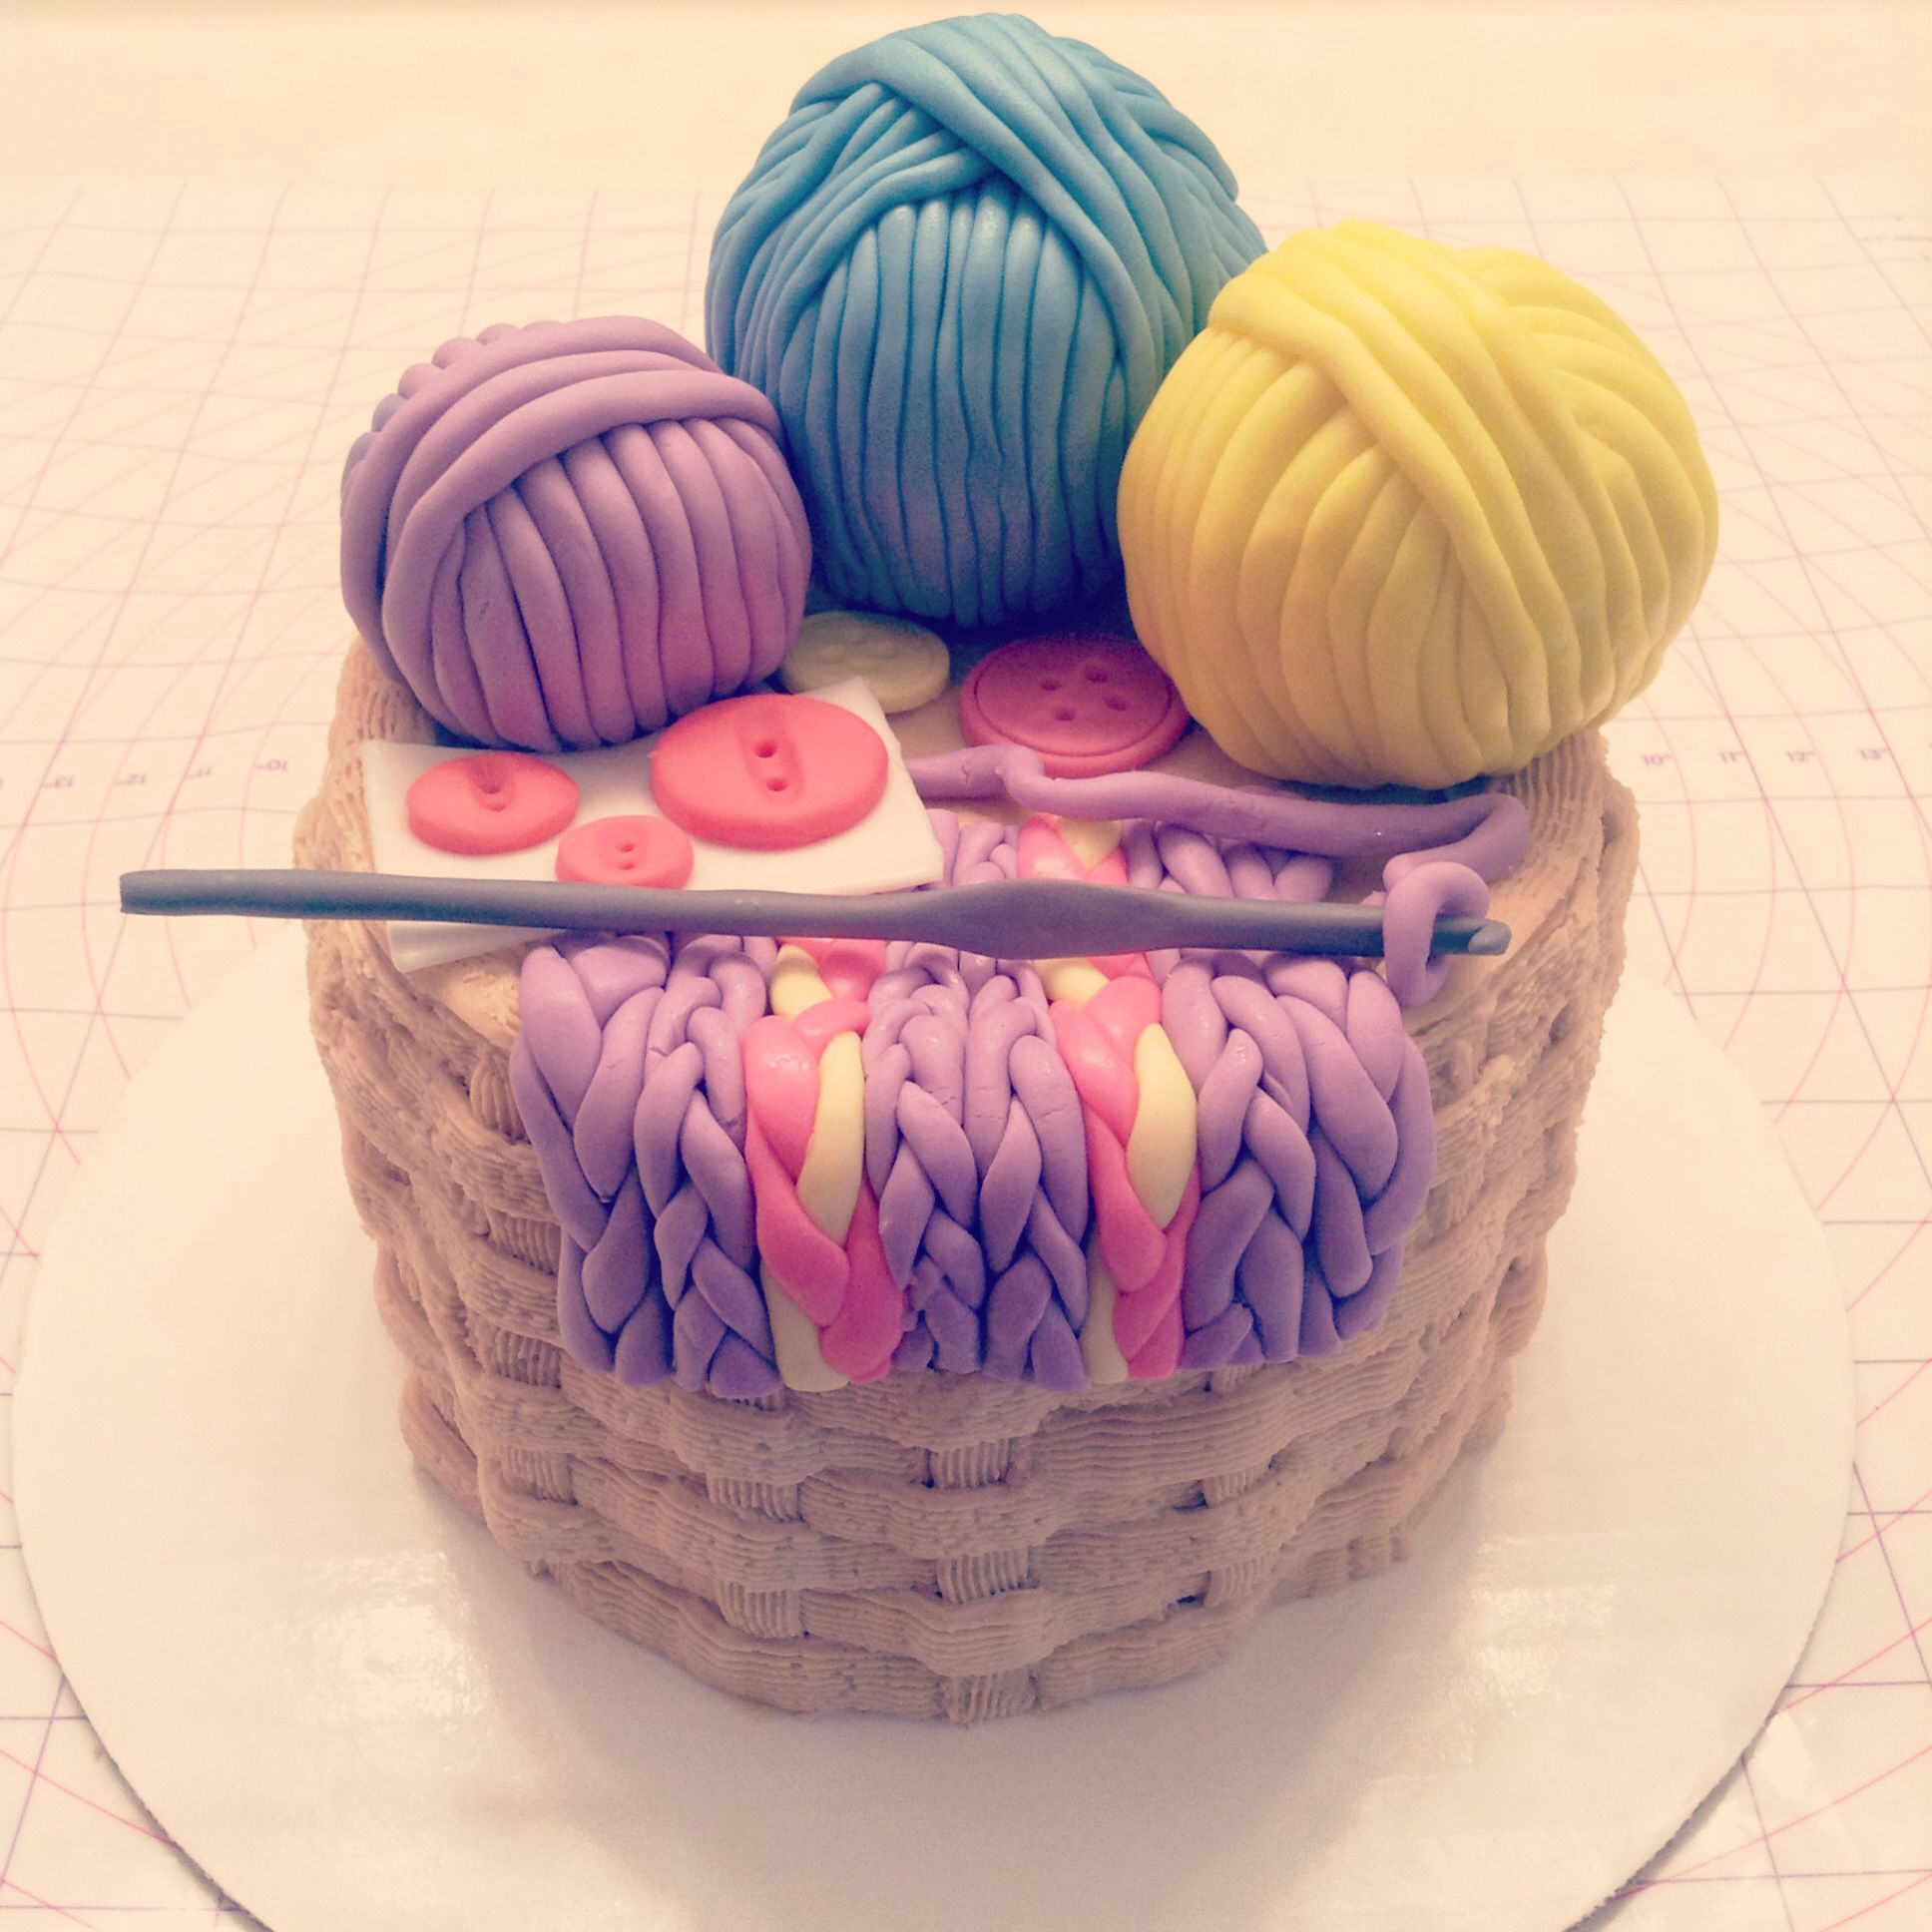 Crochet Birthday Cake Crochet Themed Cake My Sweet Life Pinterest Cake Themed Cakes